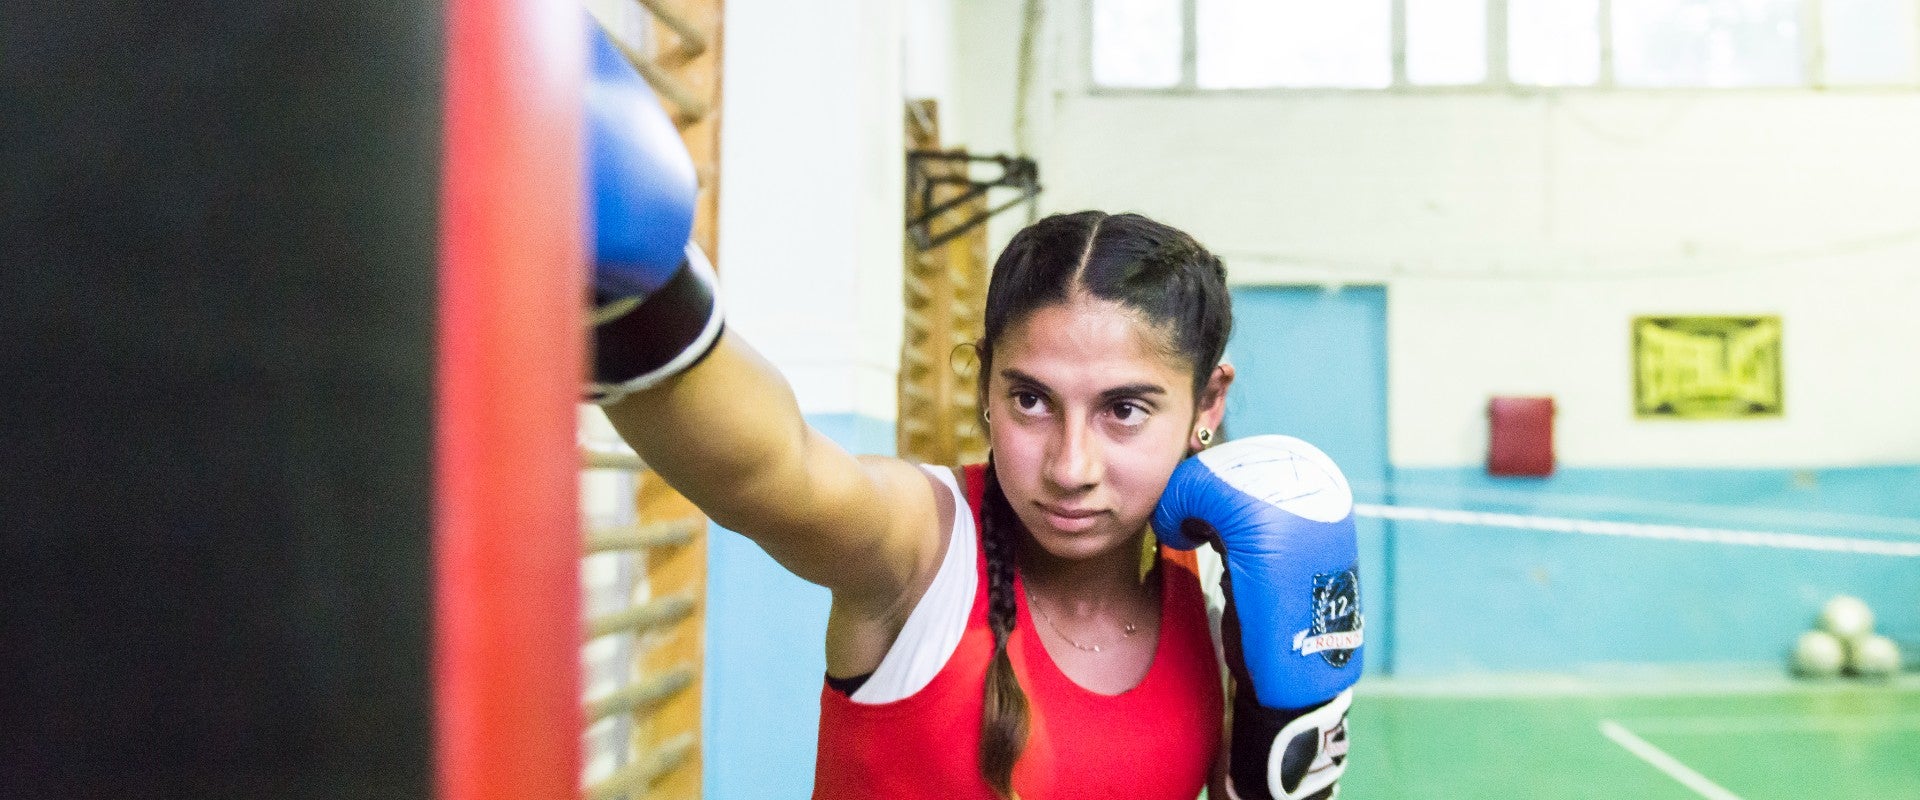 Stela cursa el octavo grado y su sueño es convertirse en campeona mundial de boxeo. Foto: ONU Mujeres Moldavia/Diana Savina.